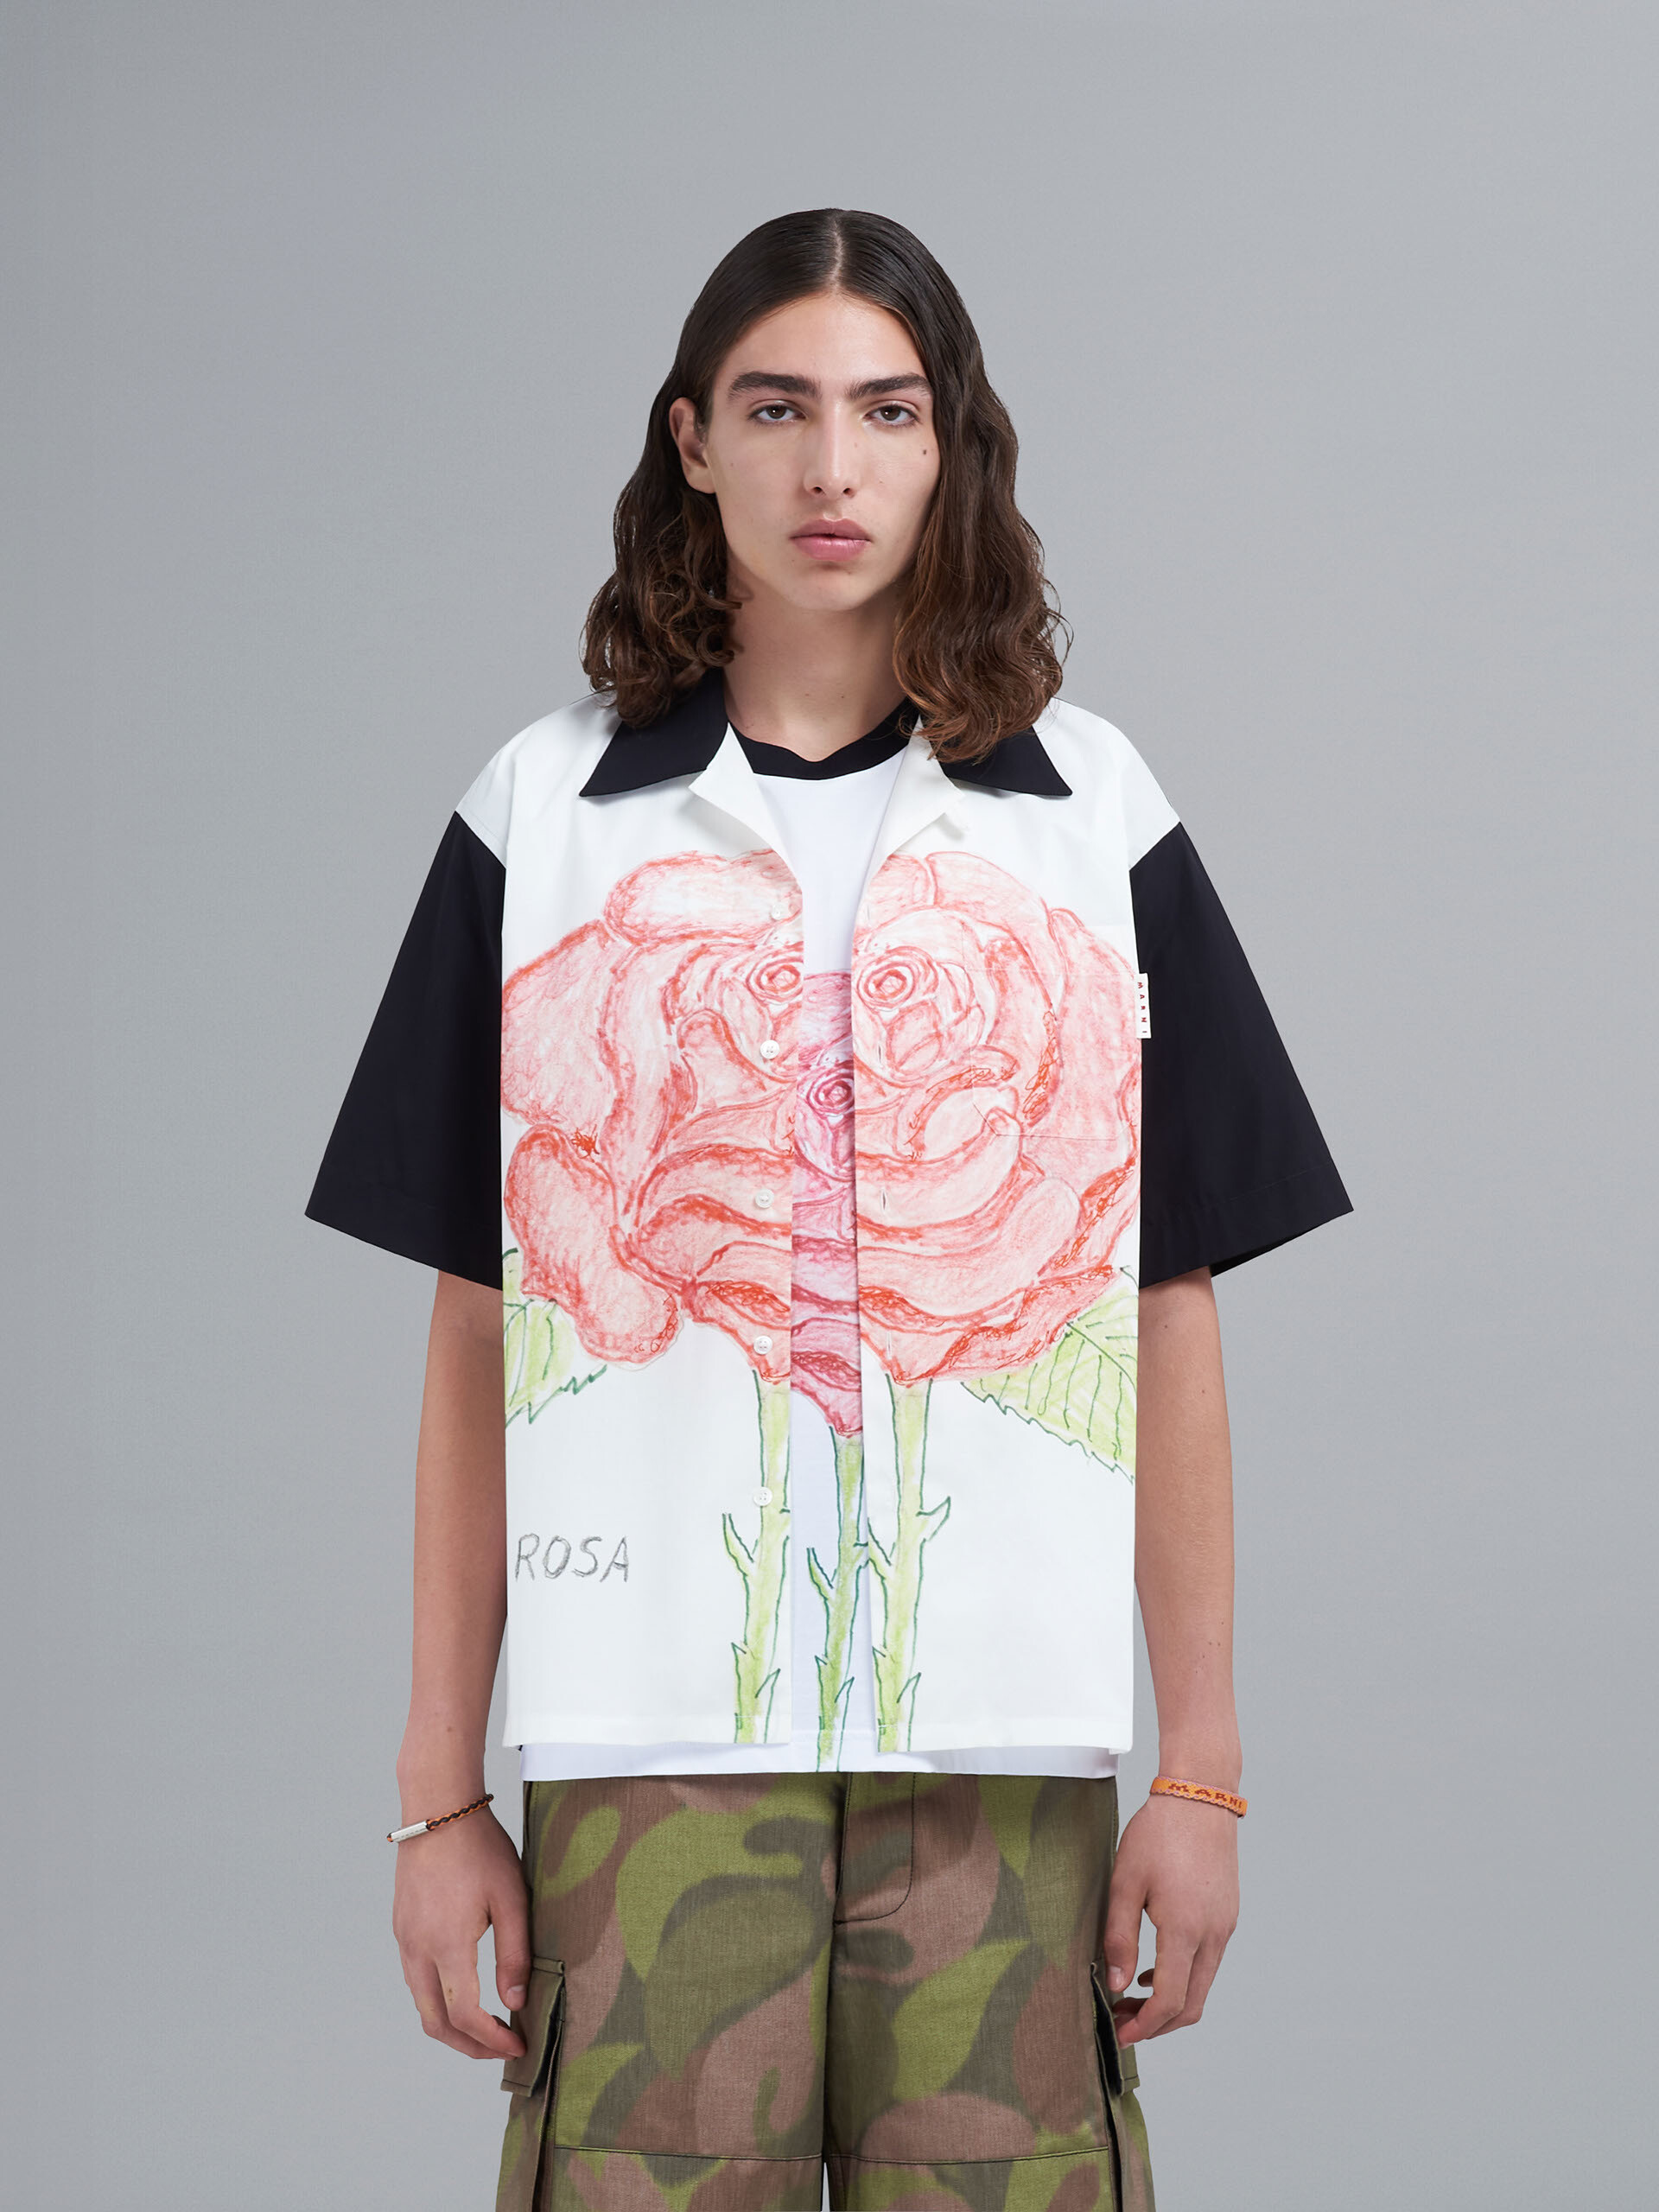 La Rosa 프린트 포플린 볼링 셔츠 - Shirts - Image 2